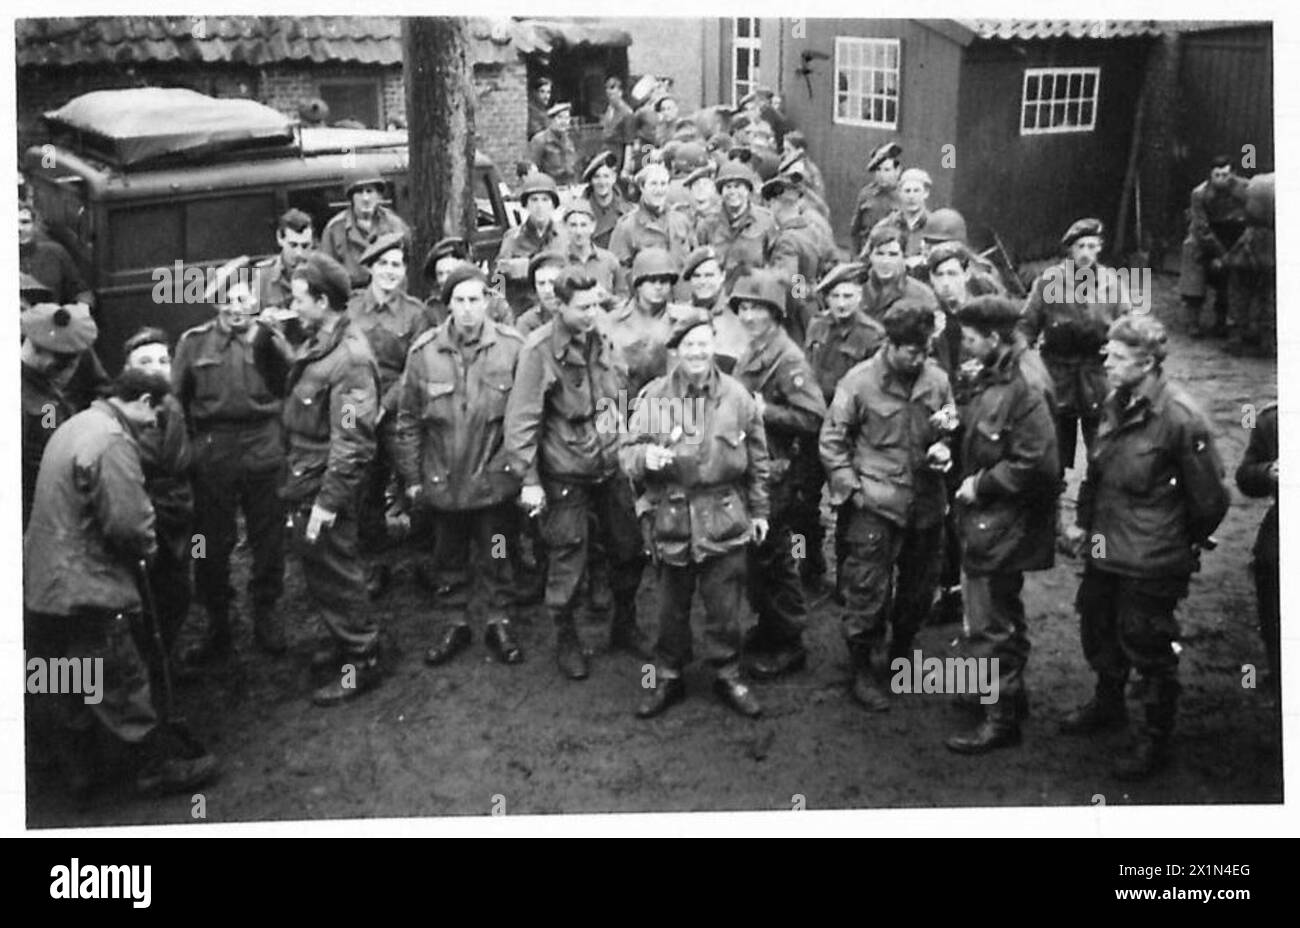 51 DIV ENTRER BORSTAL - les troupes aéroportées britanniques et américaines de la bataille d'Arnhem sont maintenant en sécurité après avoir passé six semaines derrière les lignes allemandes près de Bokstal. Ces photos montrent les hommes à un QG britannique après la prise de la ville, British Army, 21st Army Group Banque D'Images